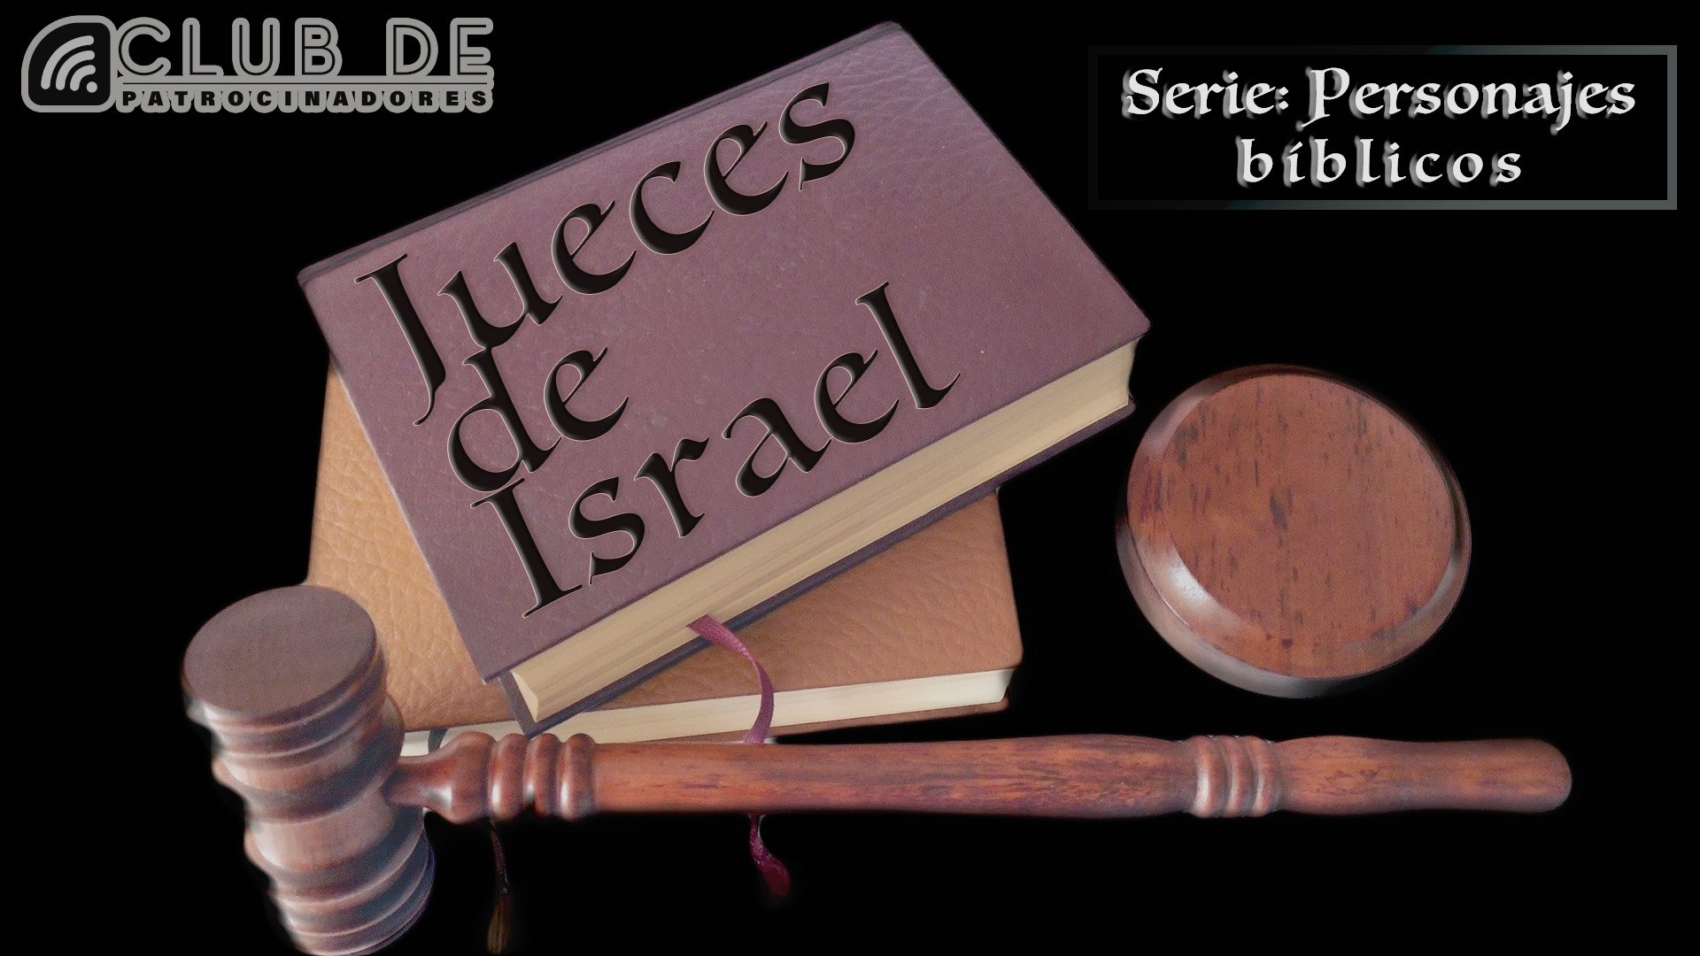 CP_56 -personaje biblico-Jueces de Israel-1920x1080